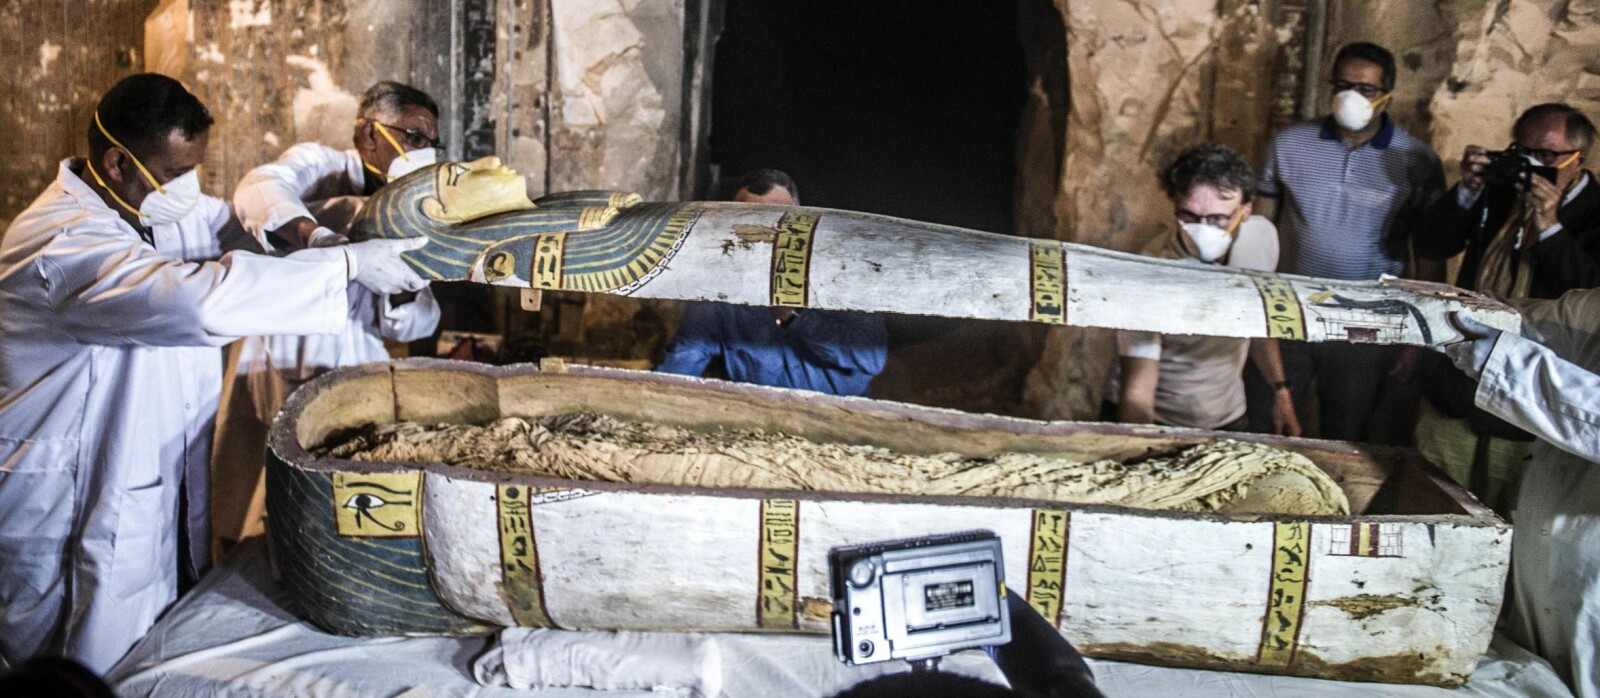 Her åpnes sarkofagen for første gang på 3500 år.